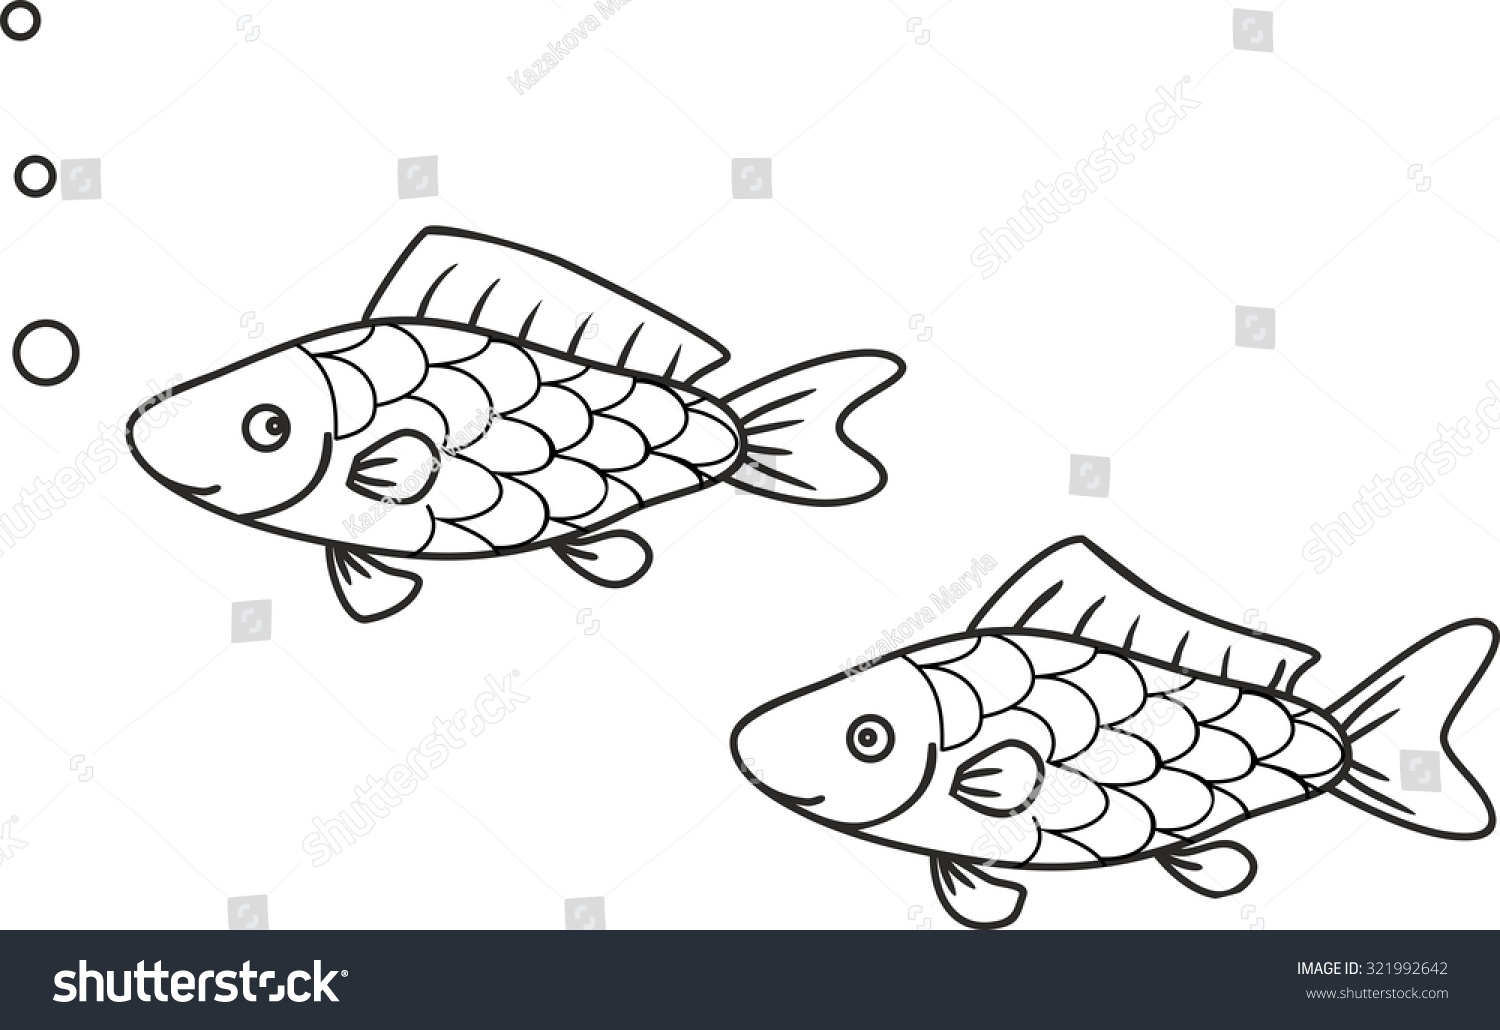 Картинка для раскрашивания рыба карась для детей